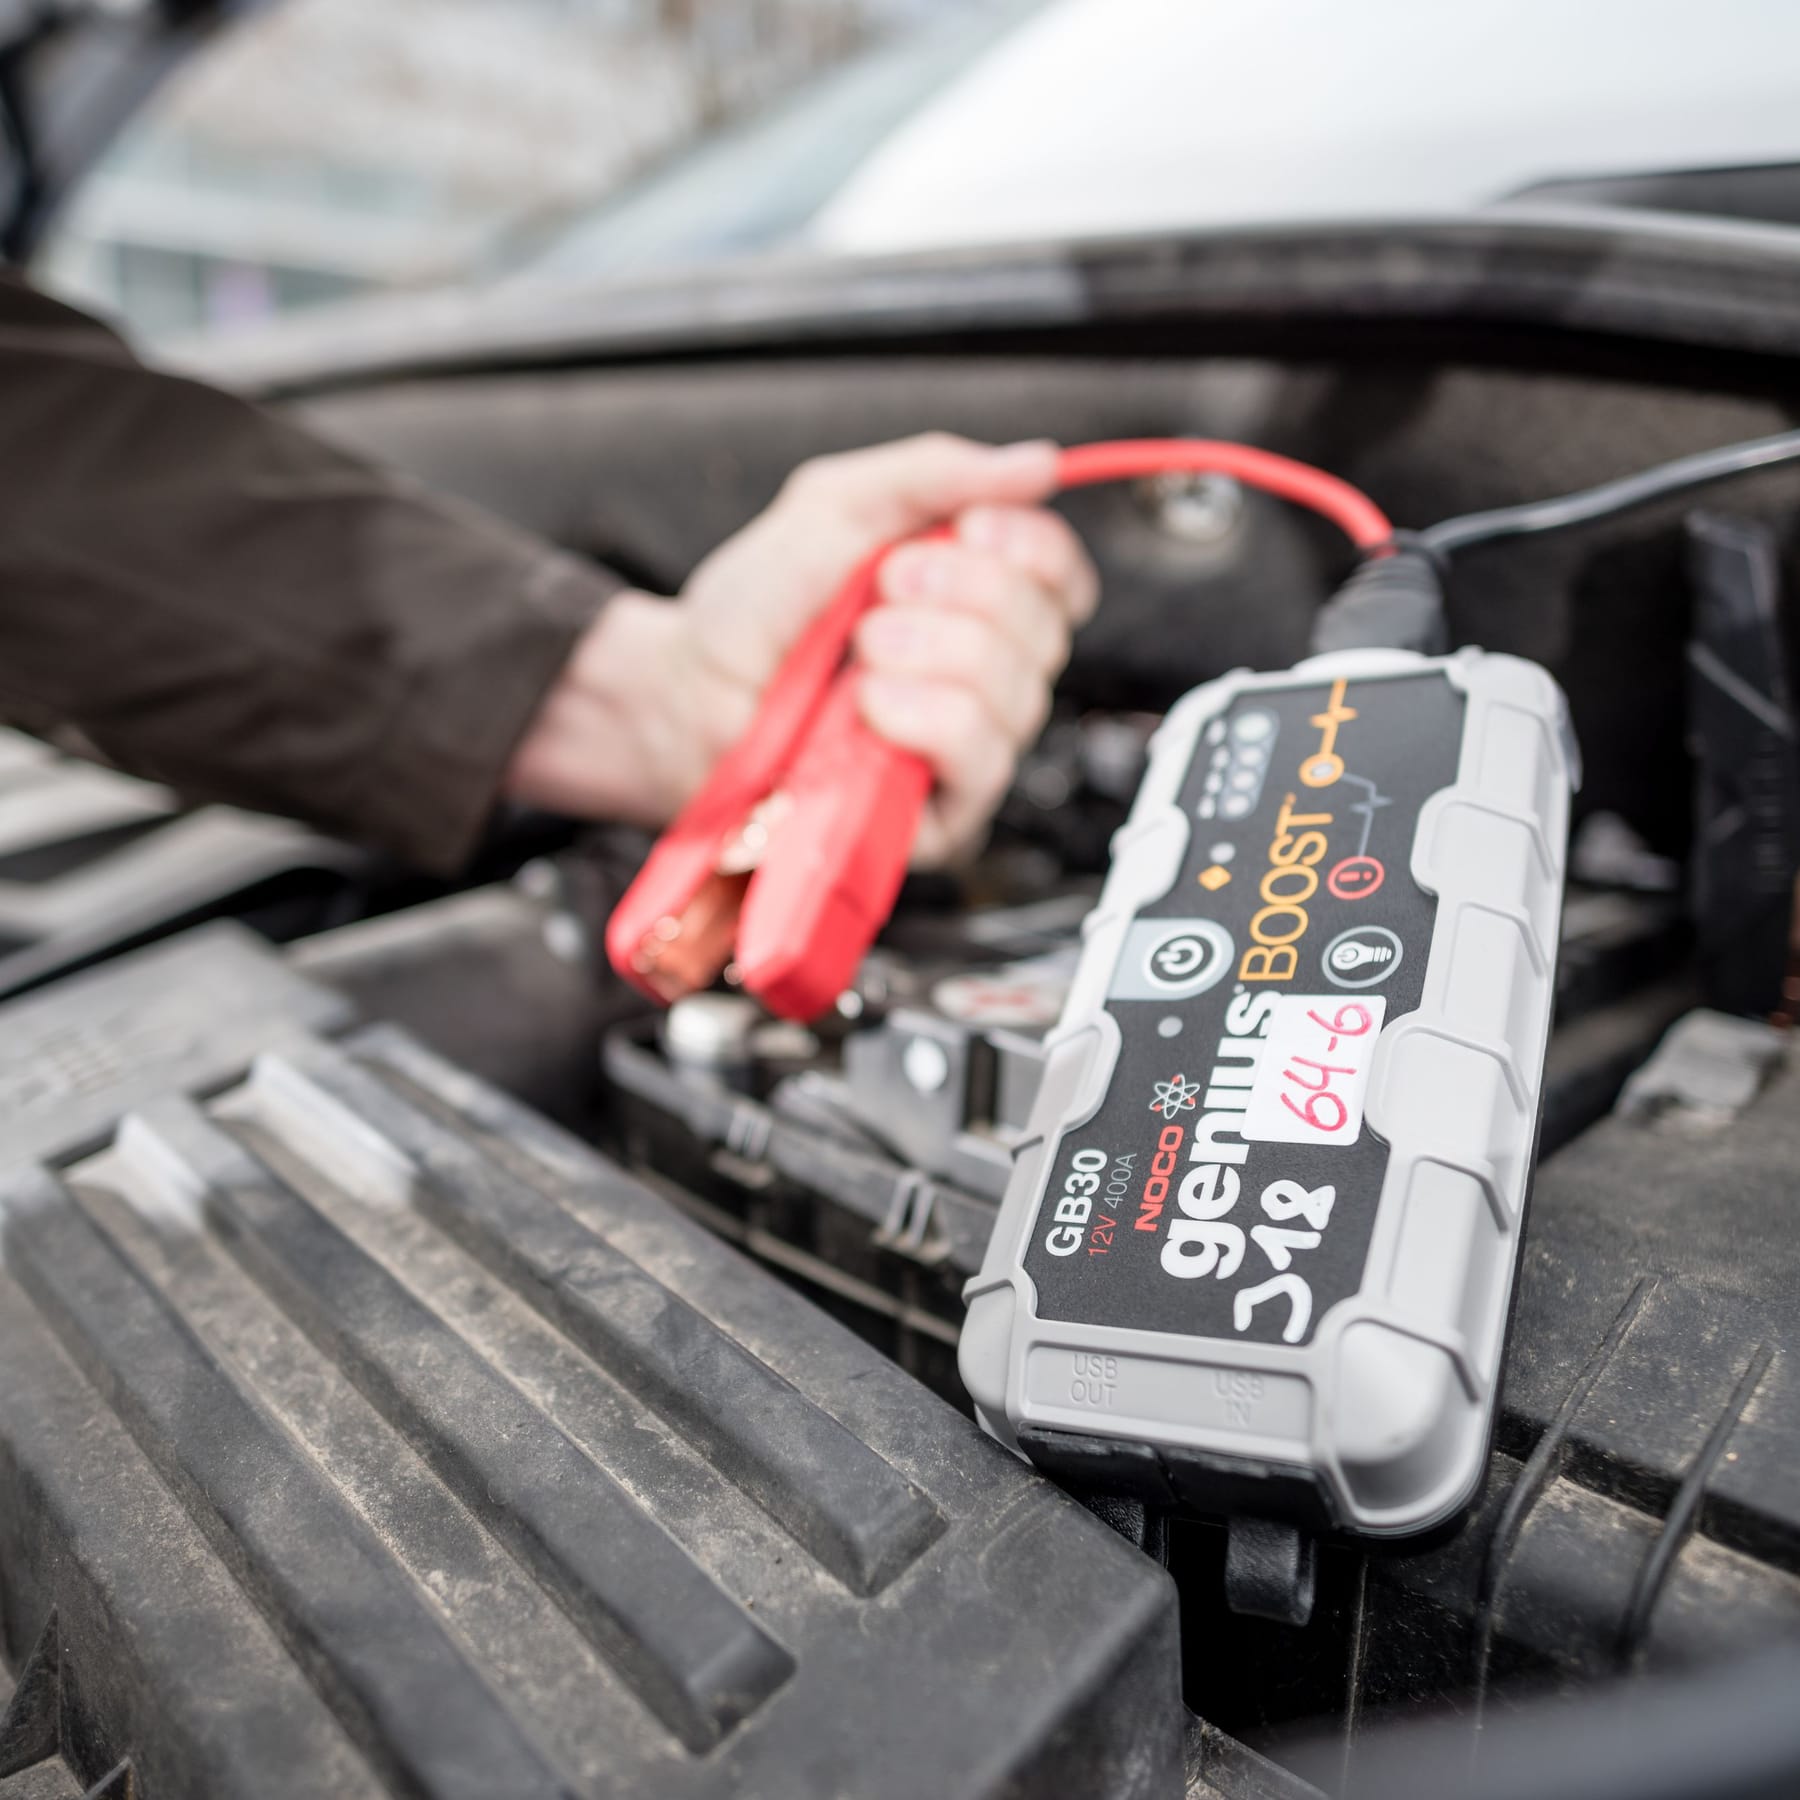 Autobatterie leer - schnell und einfach Batterie des Autos